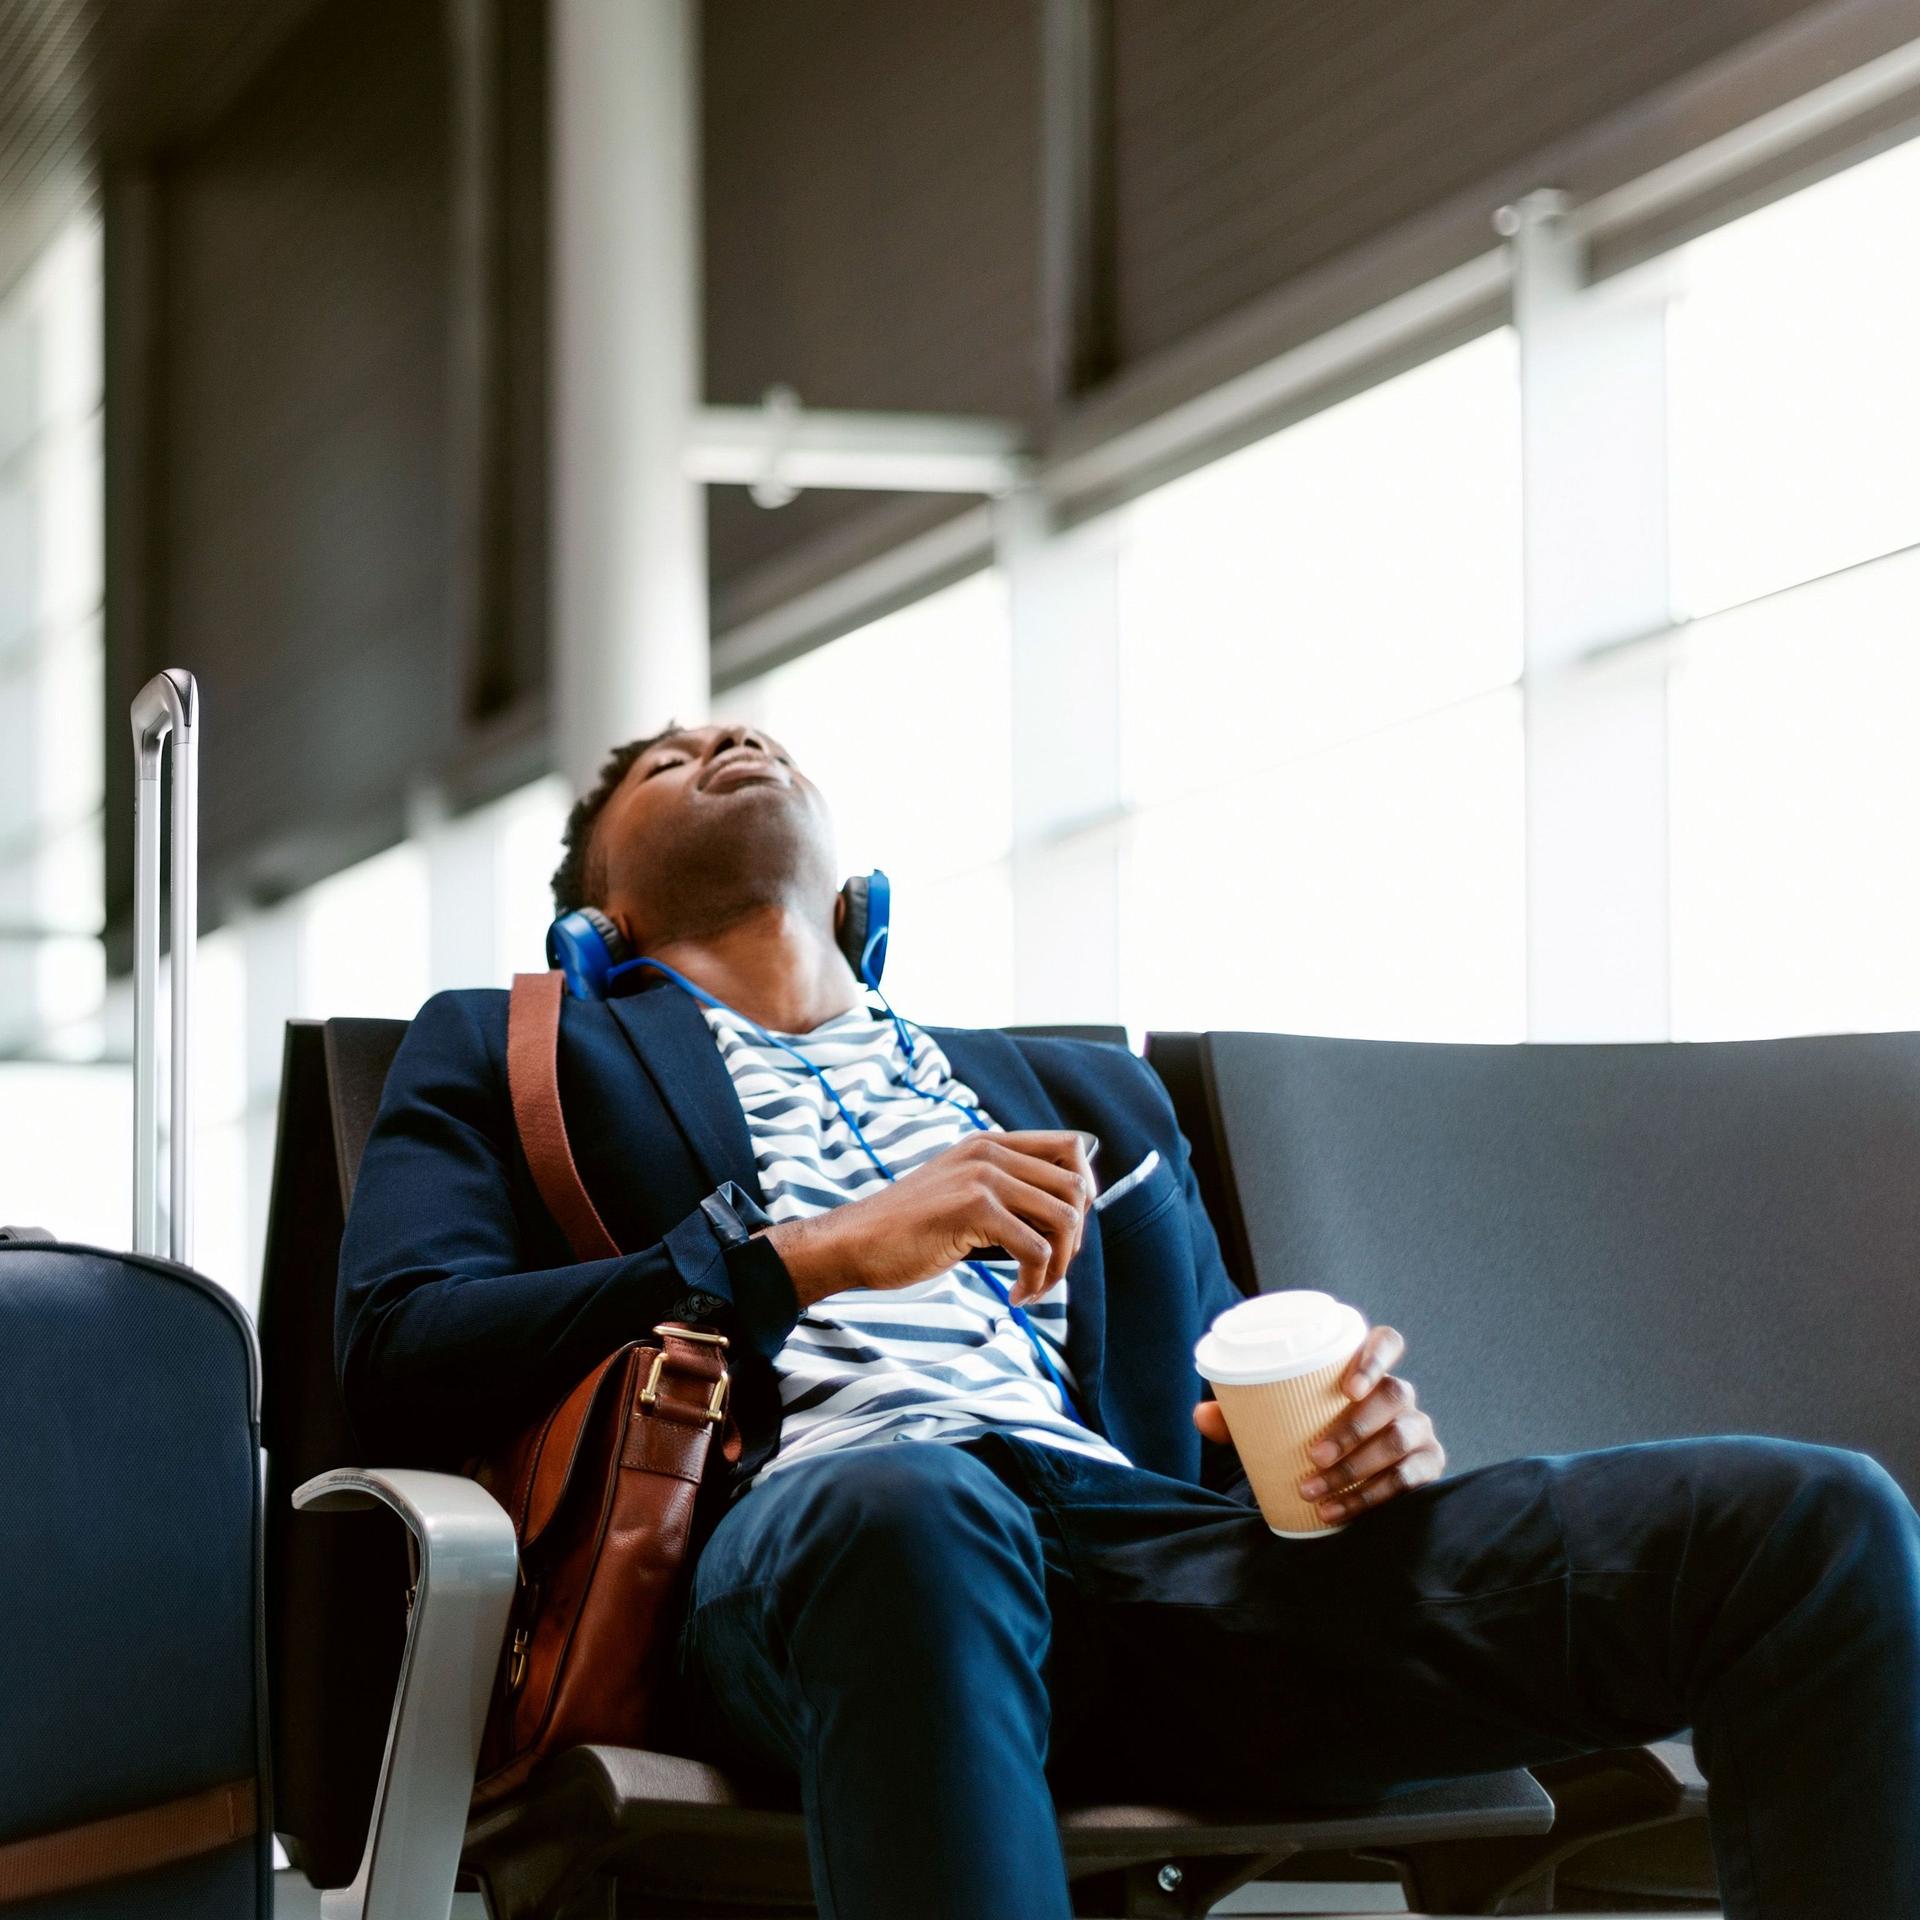 Ein junger Mann sitzt müde, mit geschlossenen Augen, Kopfhörern und einem Kaffebecher neben seinem Gepäck am Flughafen und wartet.